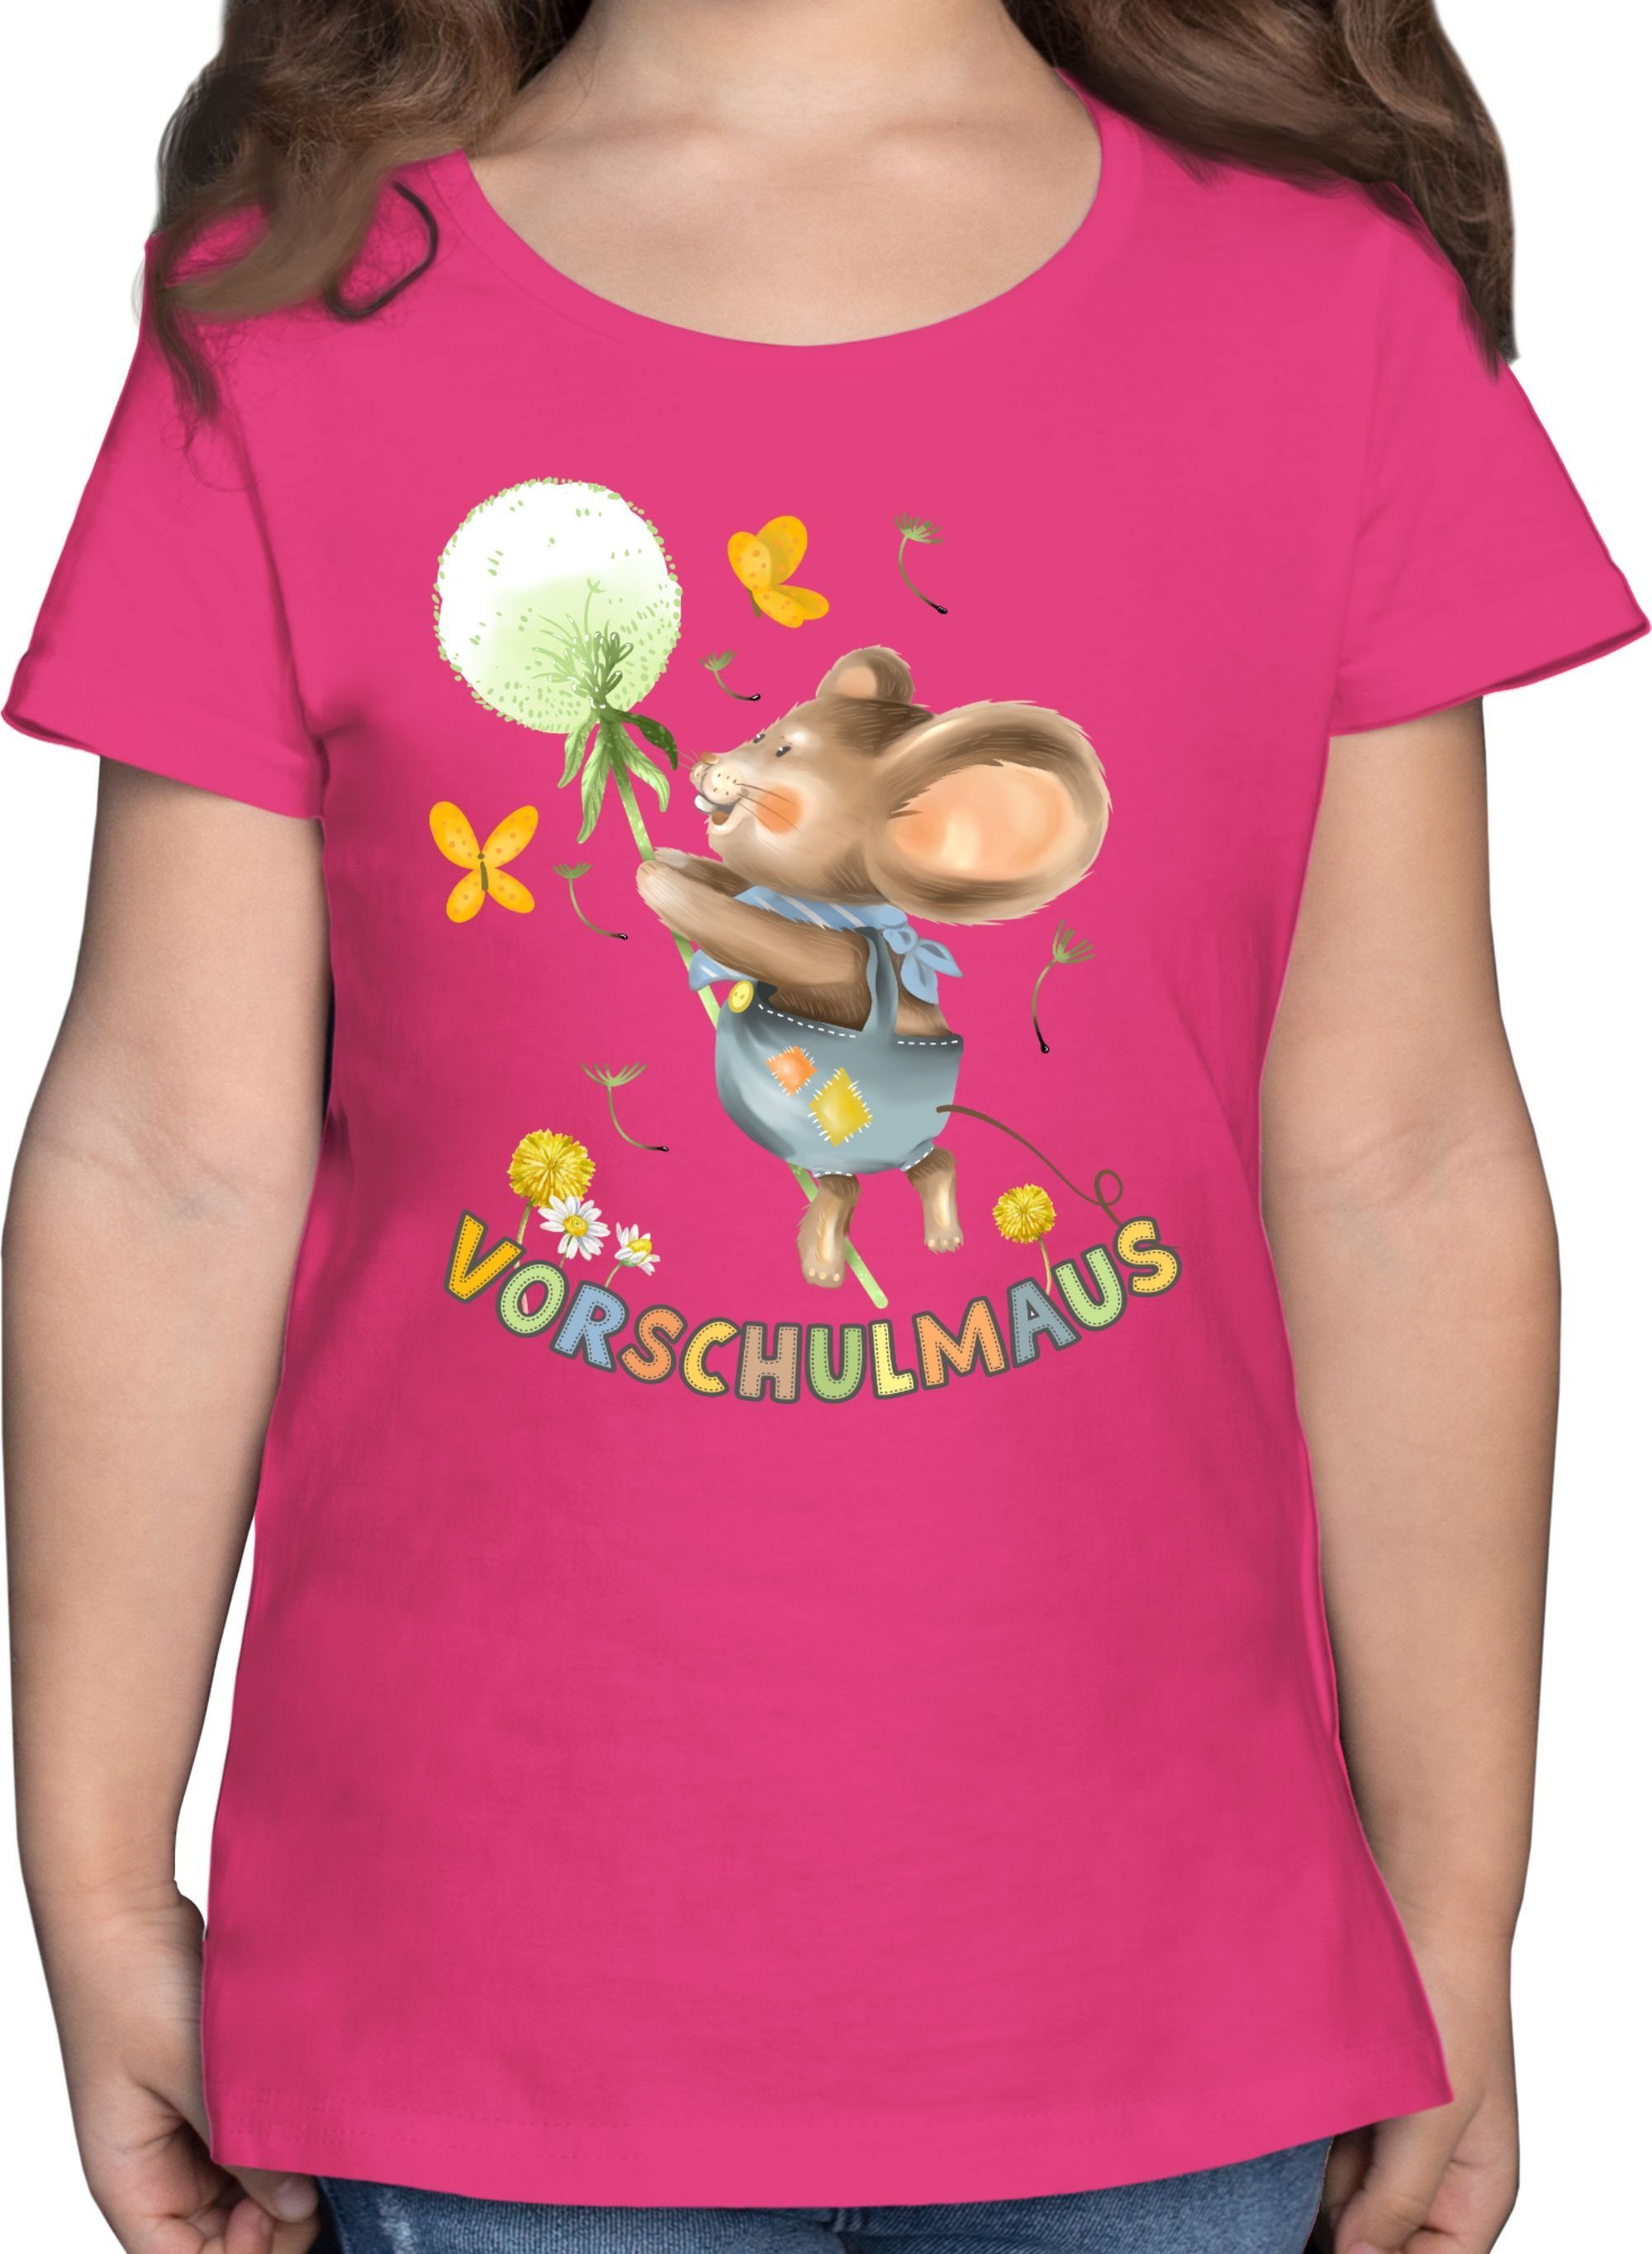 Shirtracer T-Shirt Vorschulmaus - Maus mit Pusteblume Einschulung Mädchen 1 Fuchsia